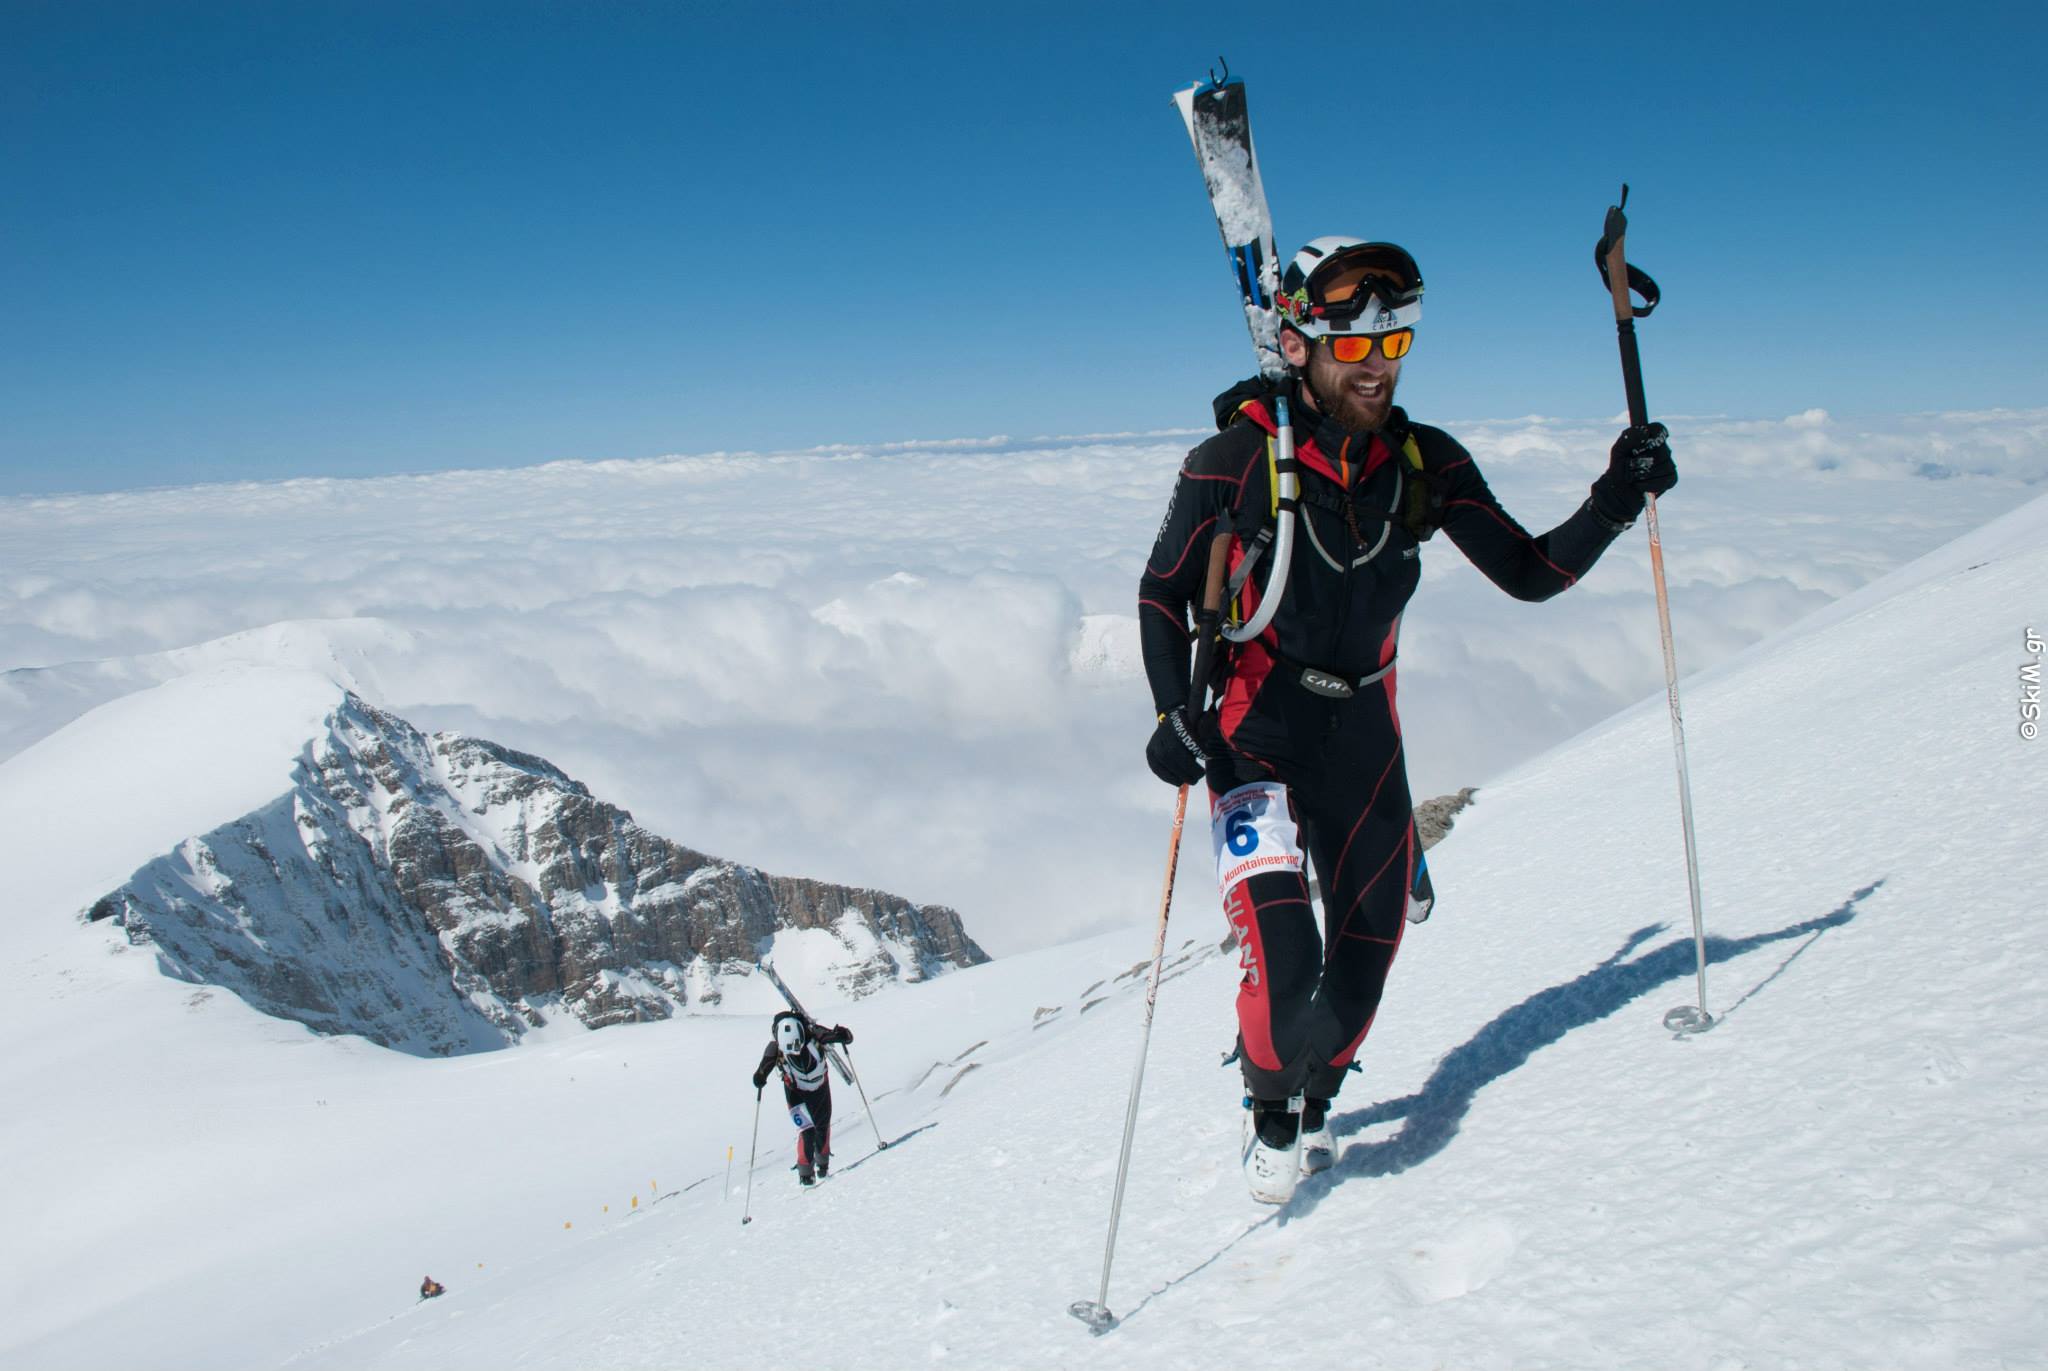 5ος Ομαδικός Αγώνας Ορειβατικού Σκι στον Δυτικό Όλυμπο